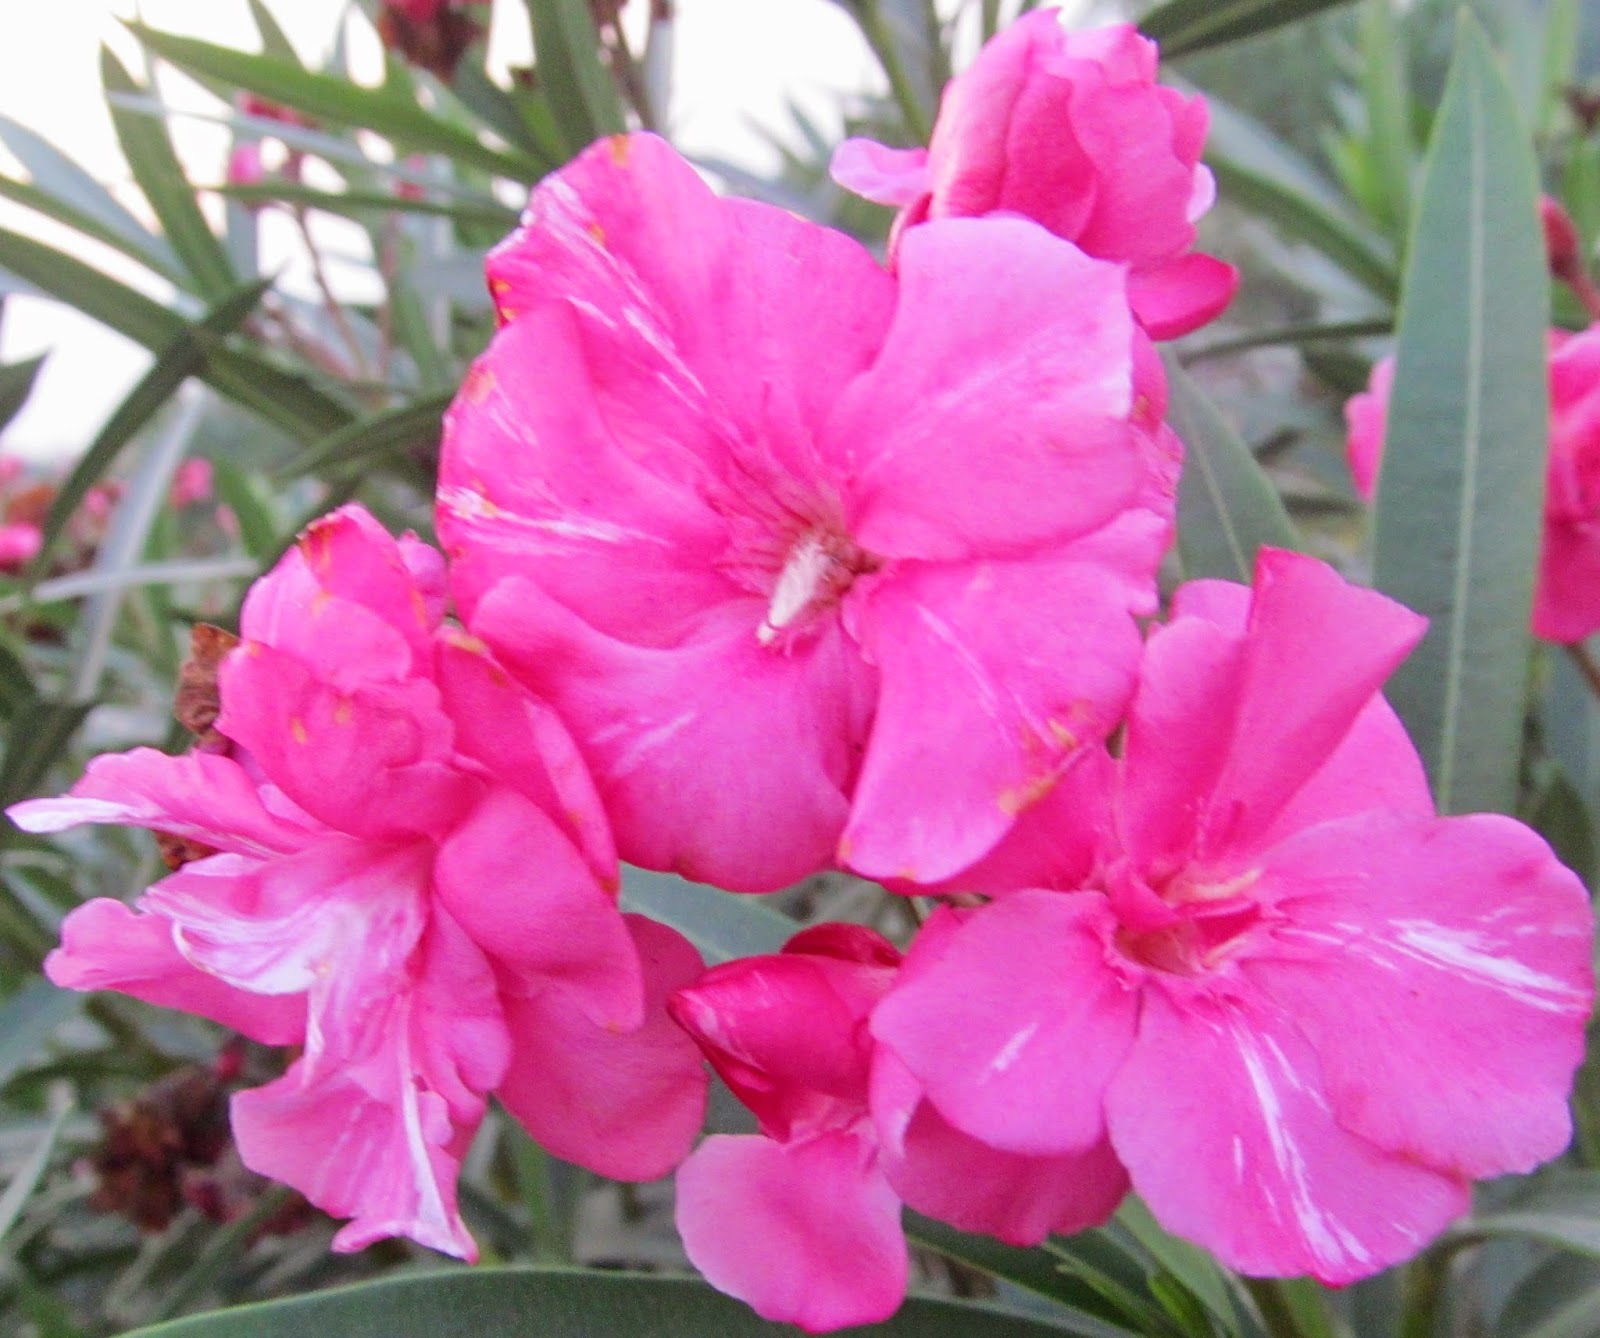 NATURAL & UNIQUE PHOTOGRAPHY: LAURIER ROSE FLOWER OR KARVEER FLOWER